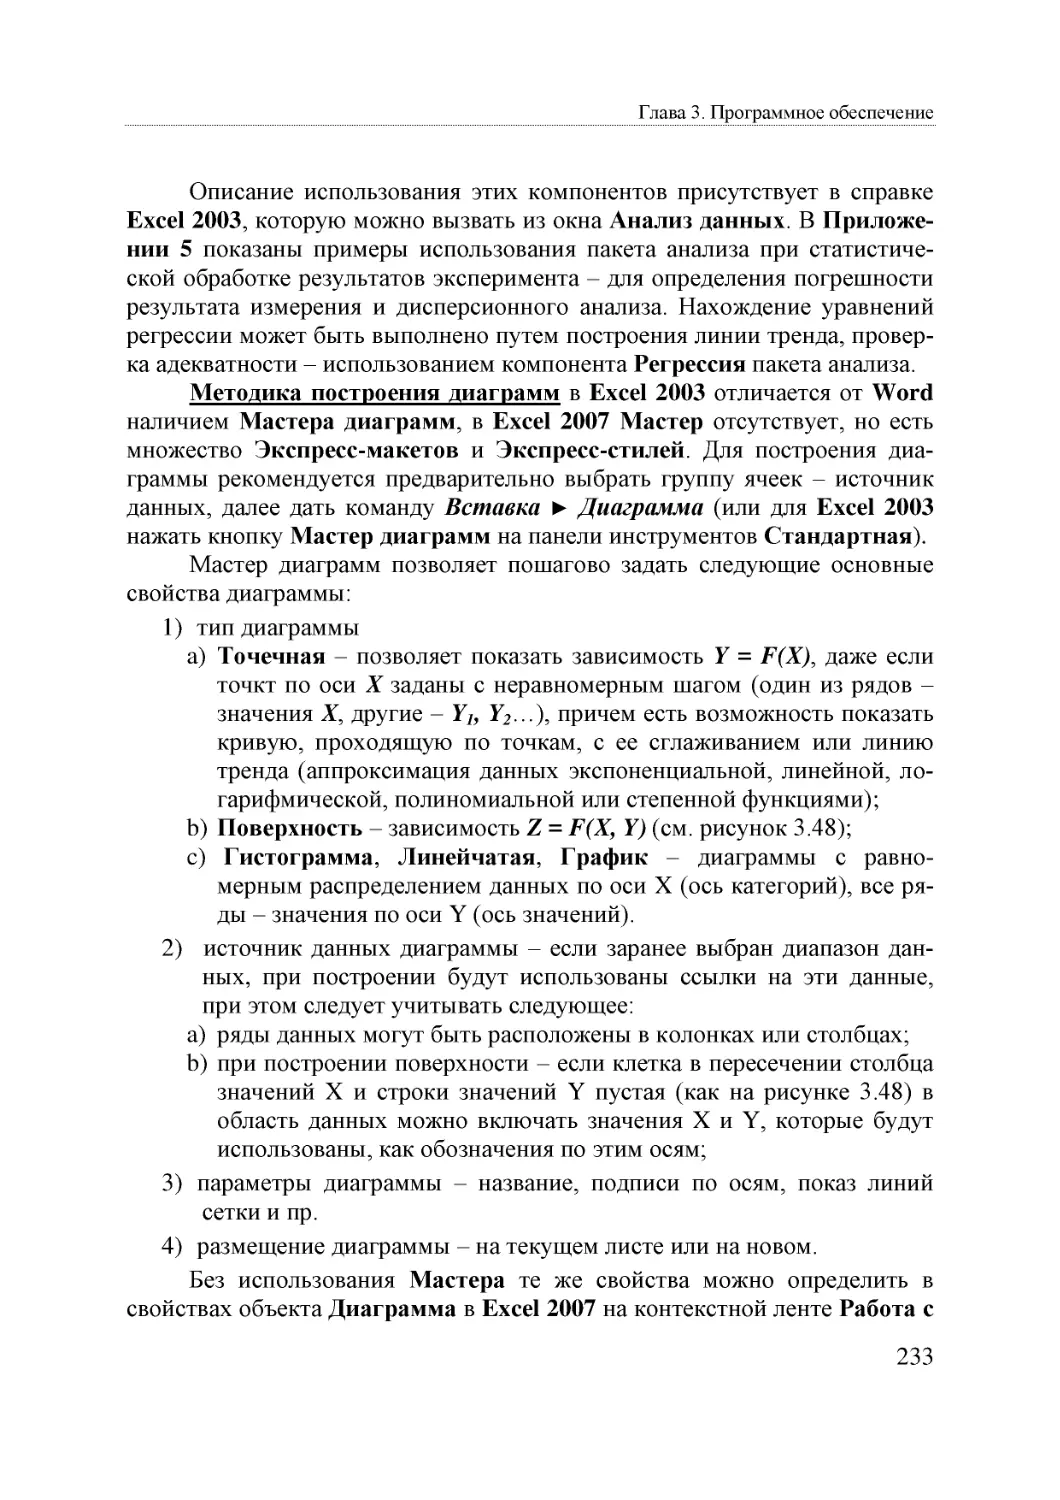 Informatika_Uchebnik_dlya_vuzov_2010 233